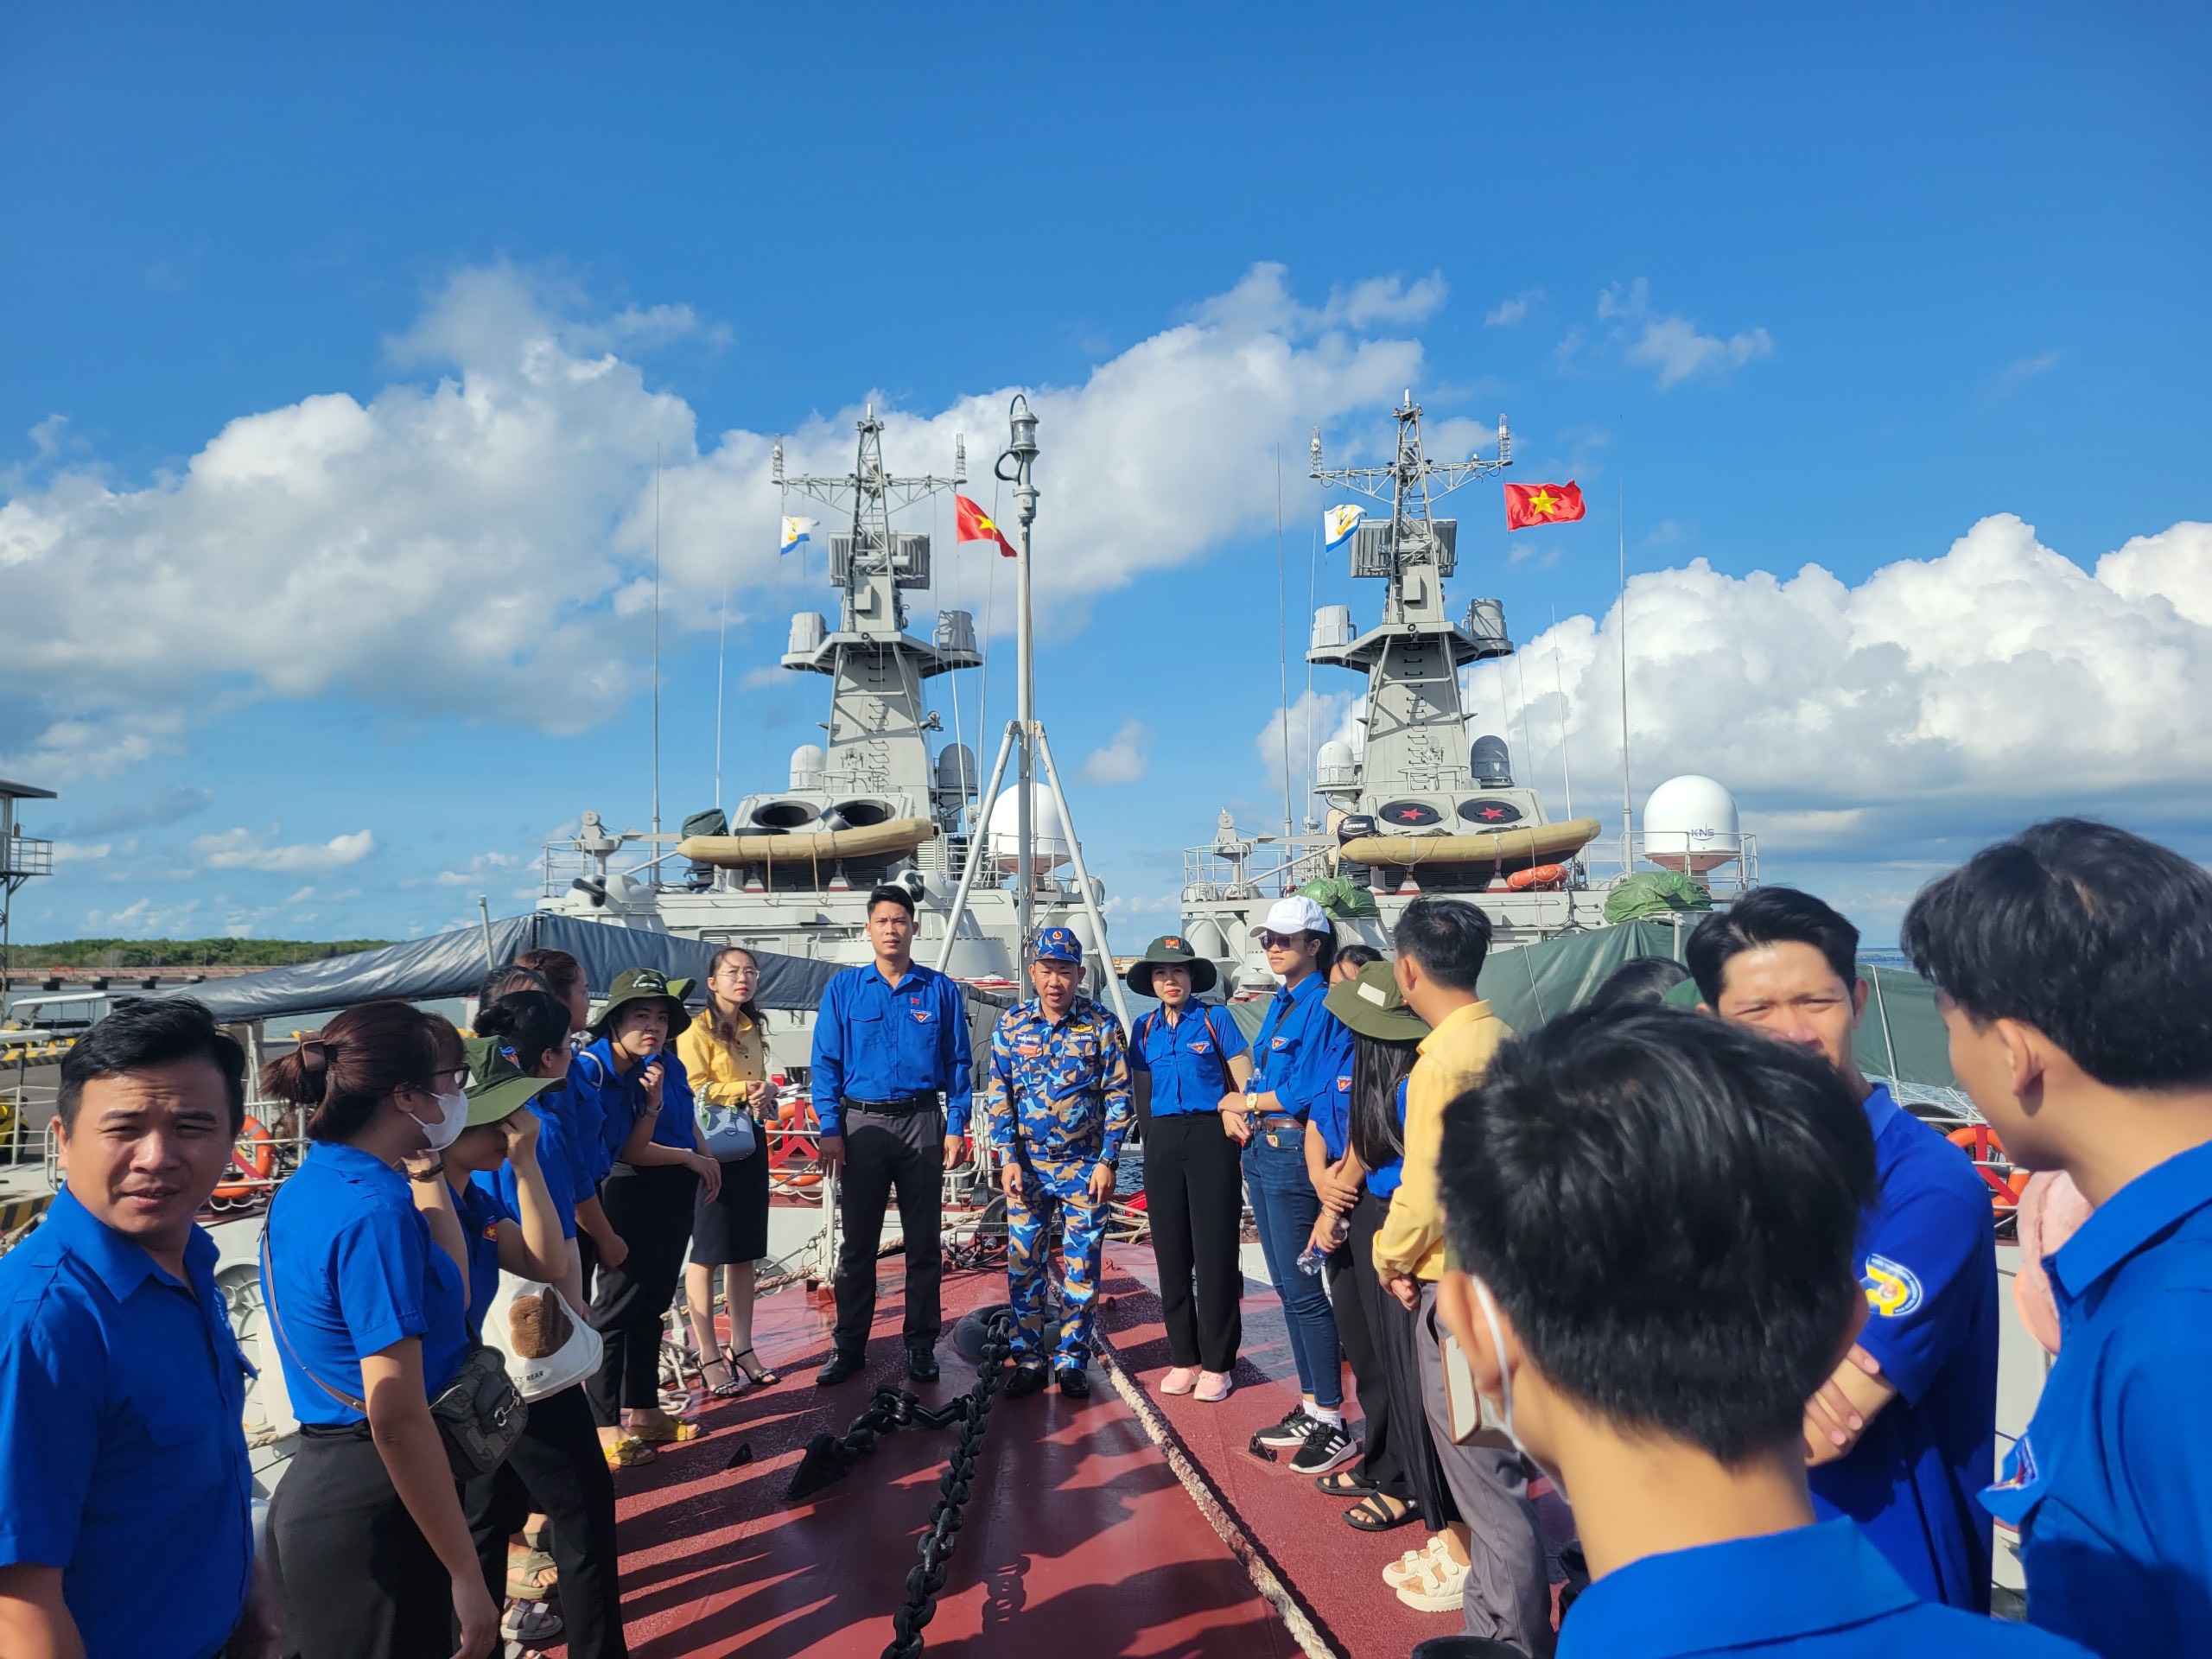 Tham quan, tìm hiểu thêm về vai trò của lực lượng Hải quân trong bảo vệ chủ quyền biên giới, biển, đảo quê hương.